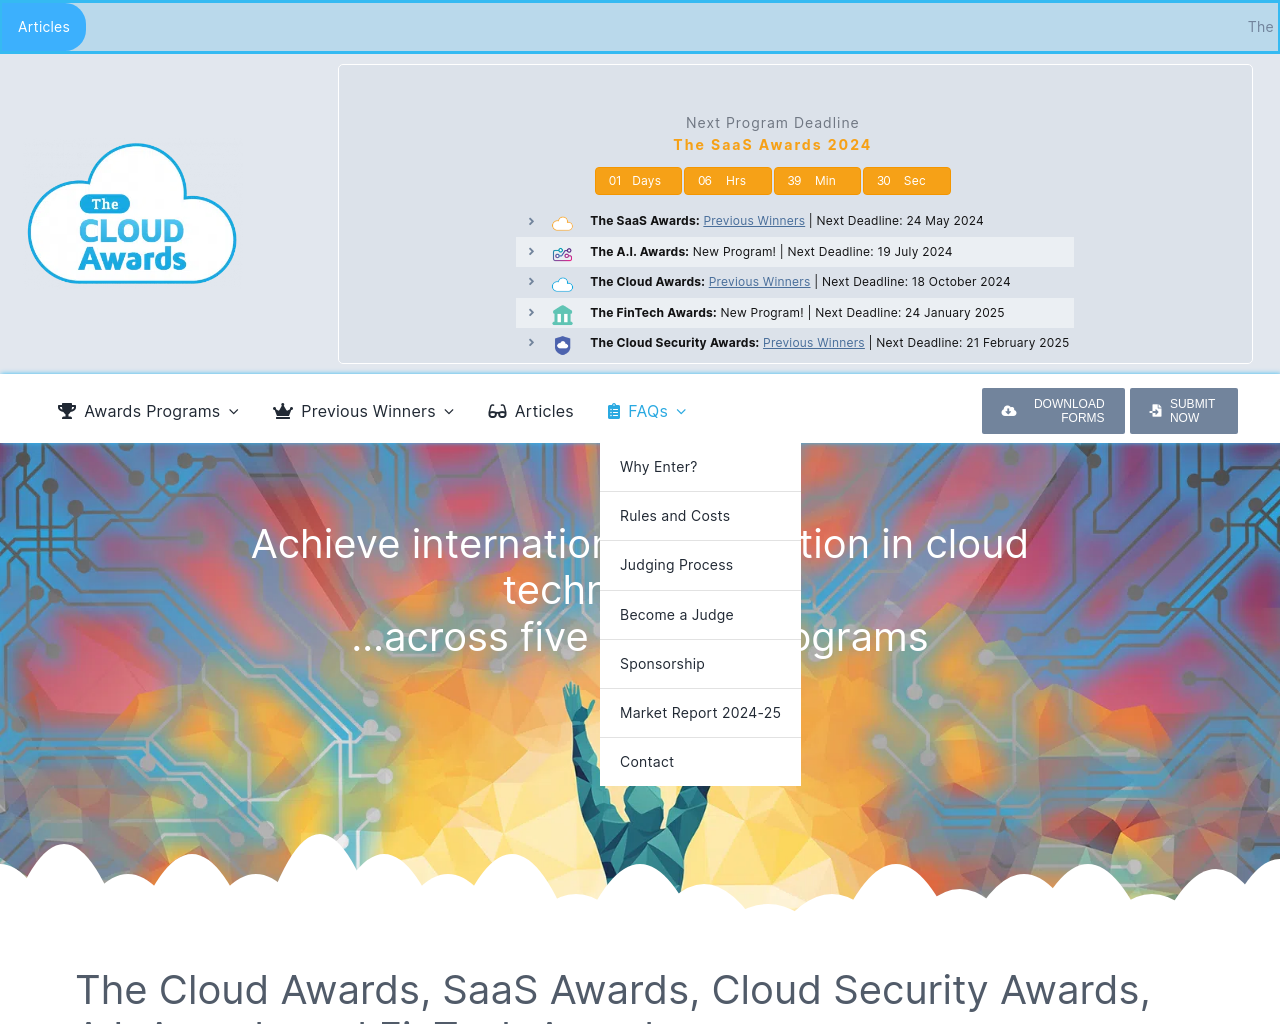 cloud-awards.com